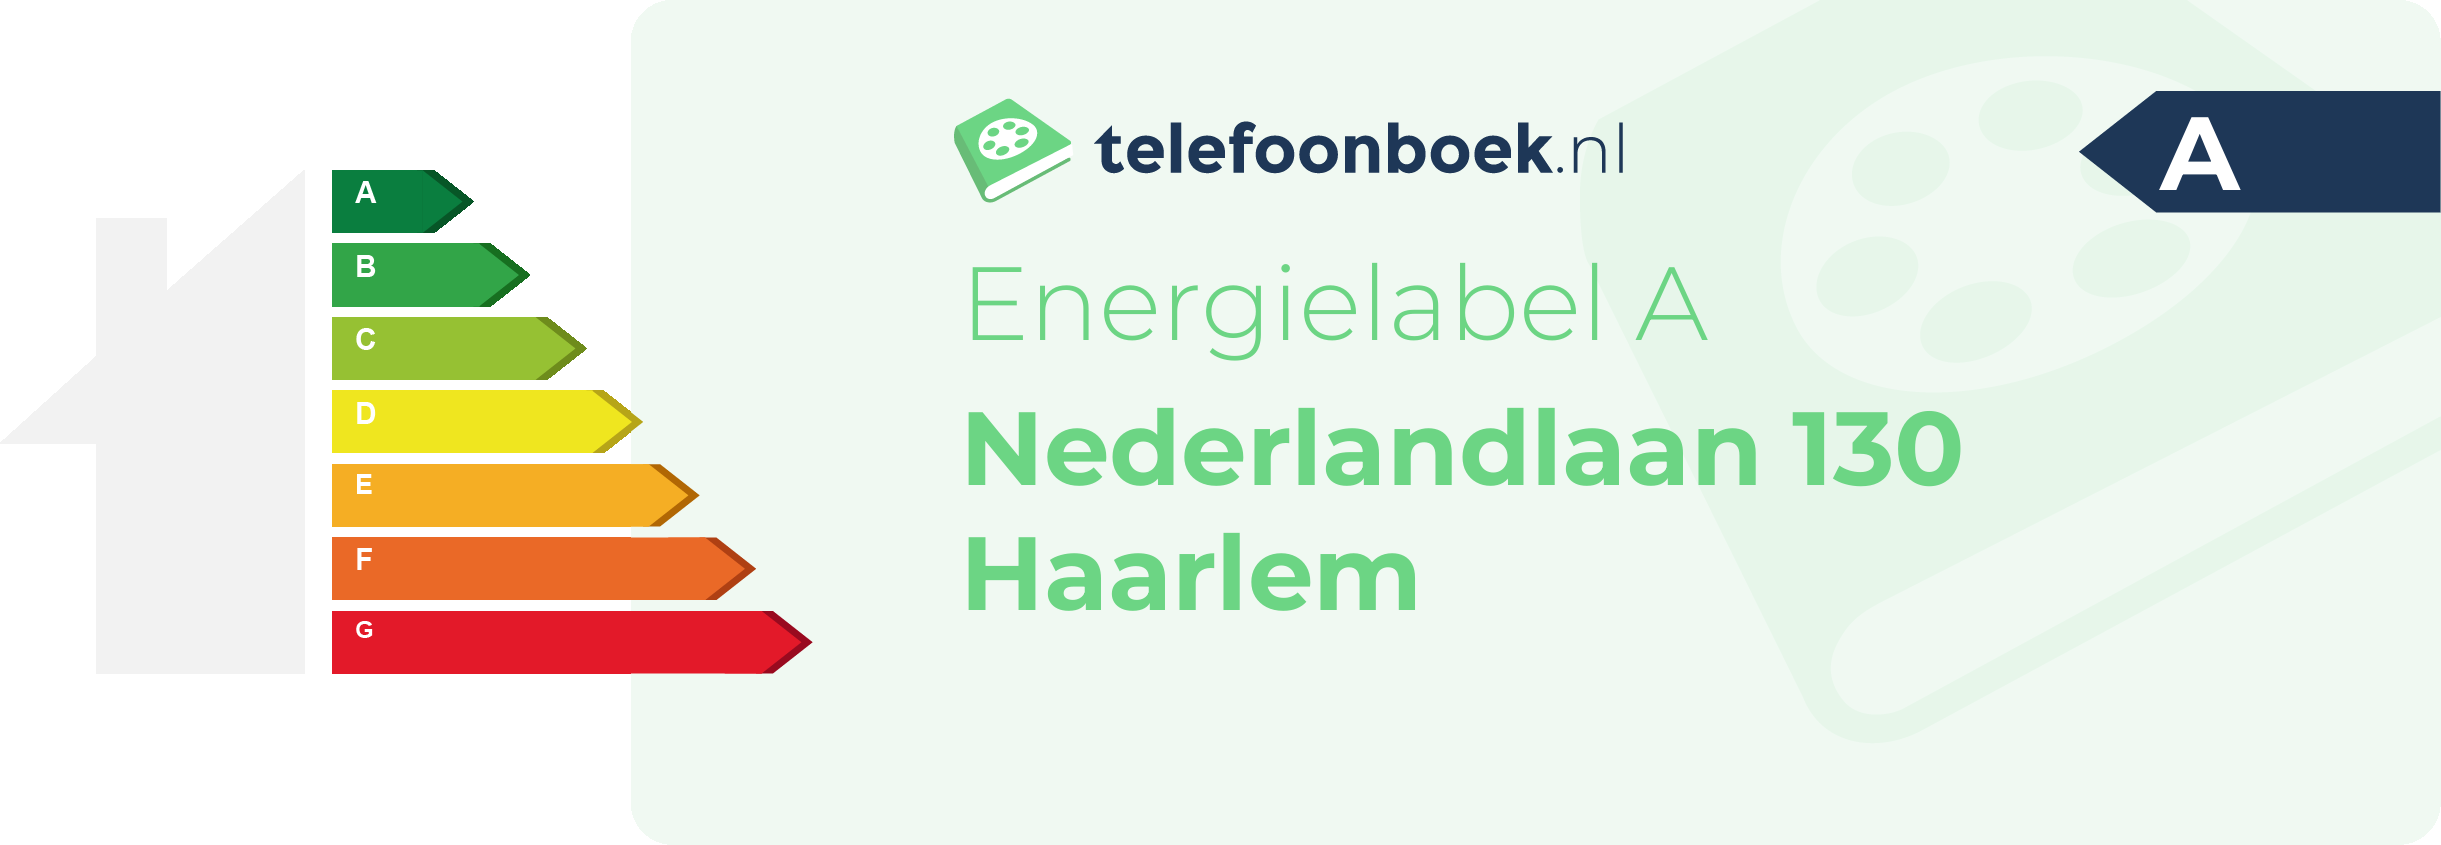 Energielabel Nederlandlaan 130 Haarlem